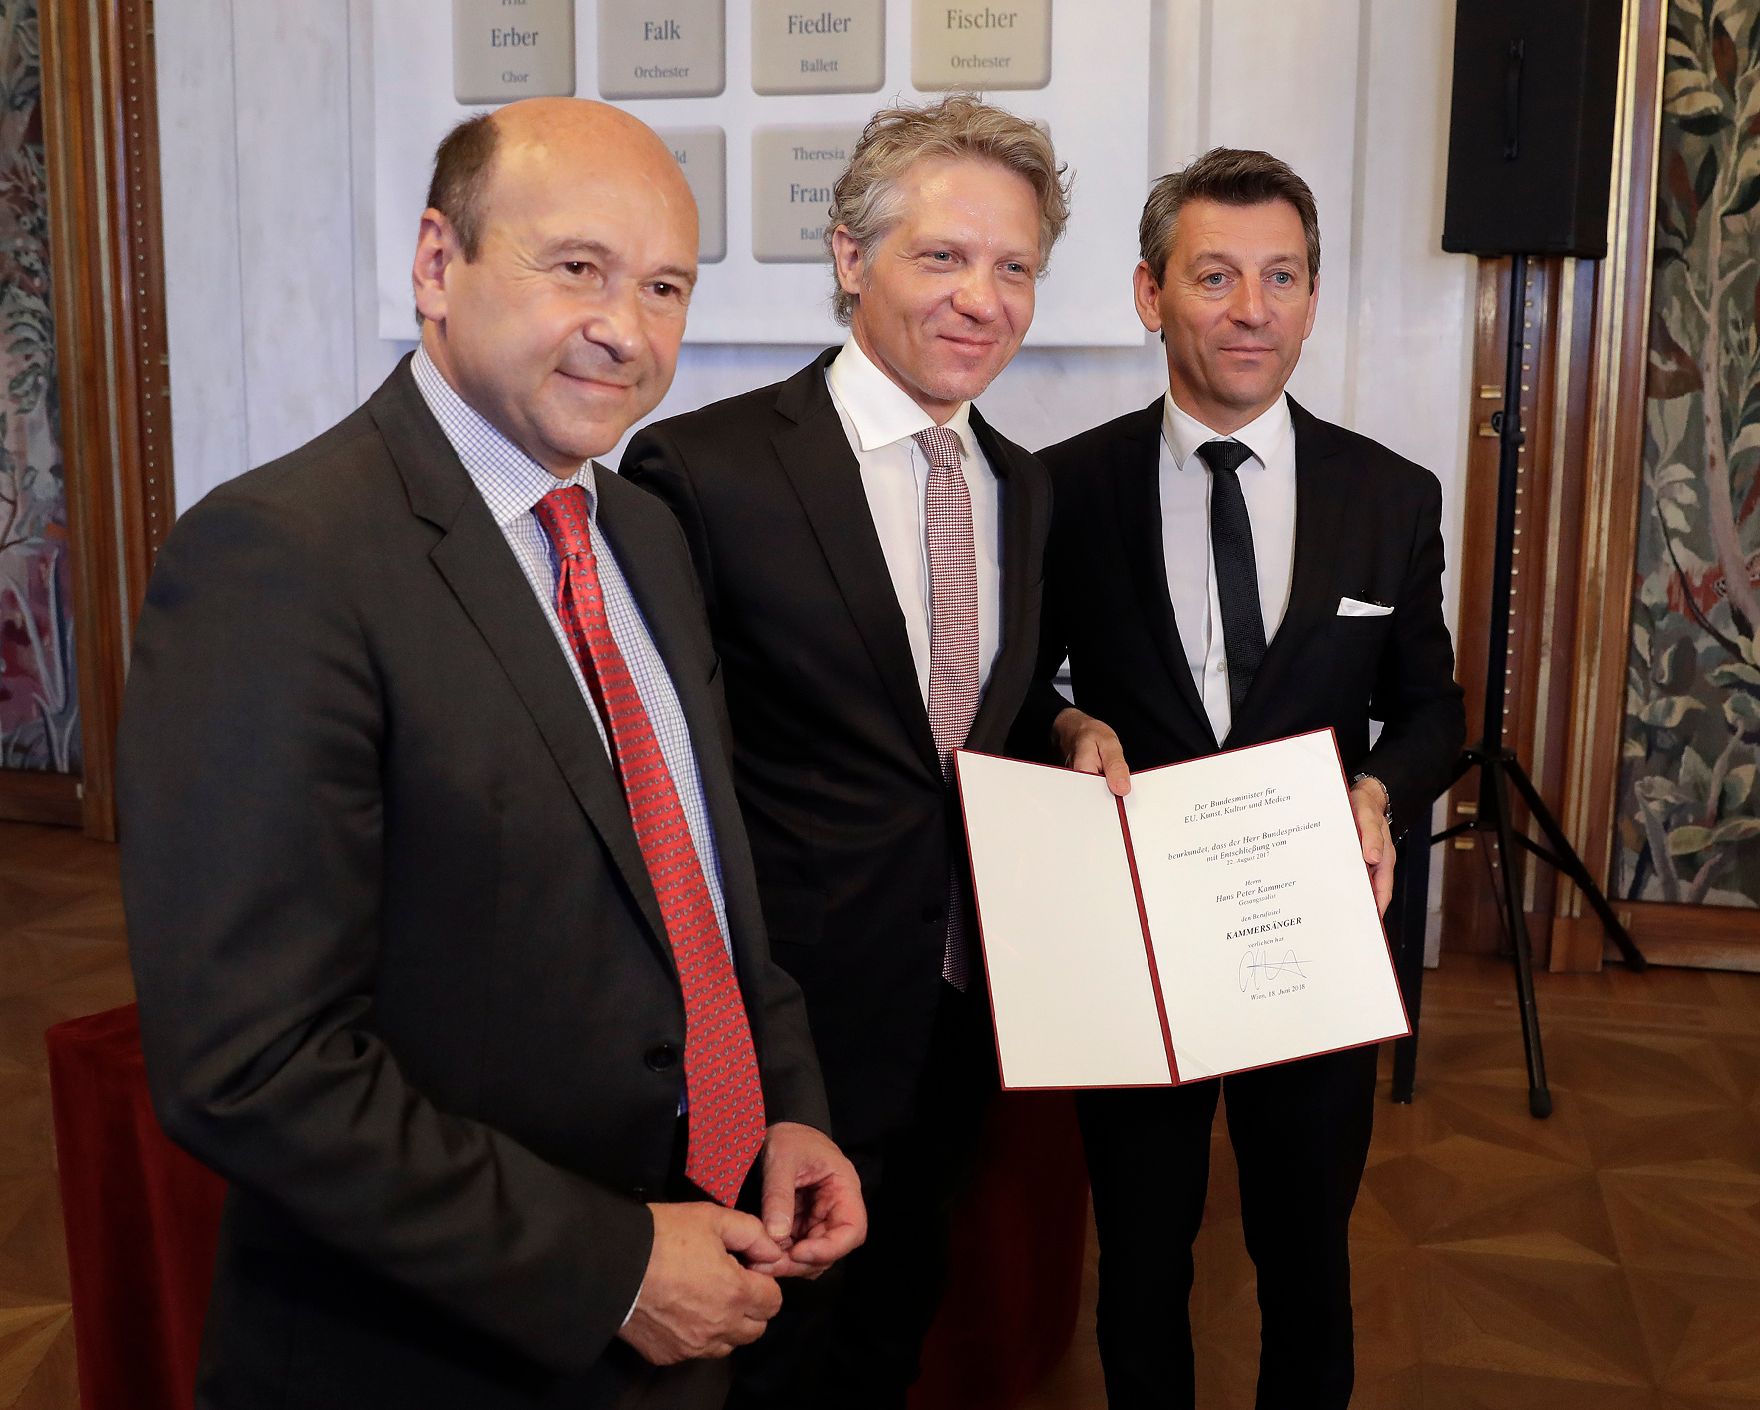 Am 18. Juni 2018 überreichte Sektionschef Jürgen Meindl (r.) die Urkunde, mit der Hans Peter Kammerer (m.) und Benedikt Kobel der Berufstitel Kammersänger verliehen wurde. Im Bild mit dem Direktor der Wiener Staatsoper Dominique Meyer (l.).